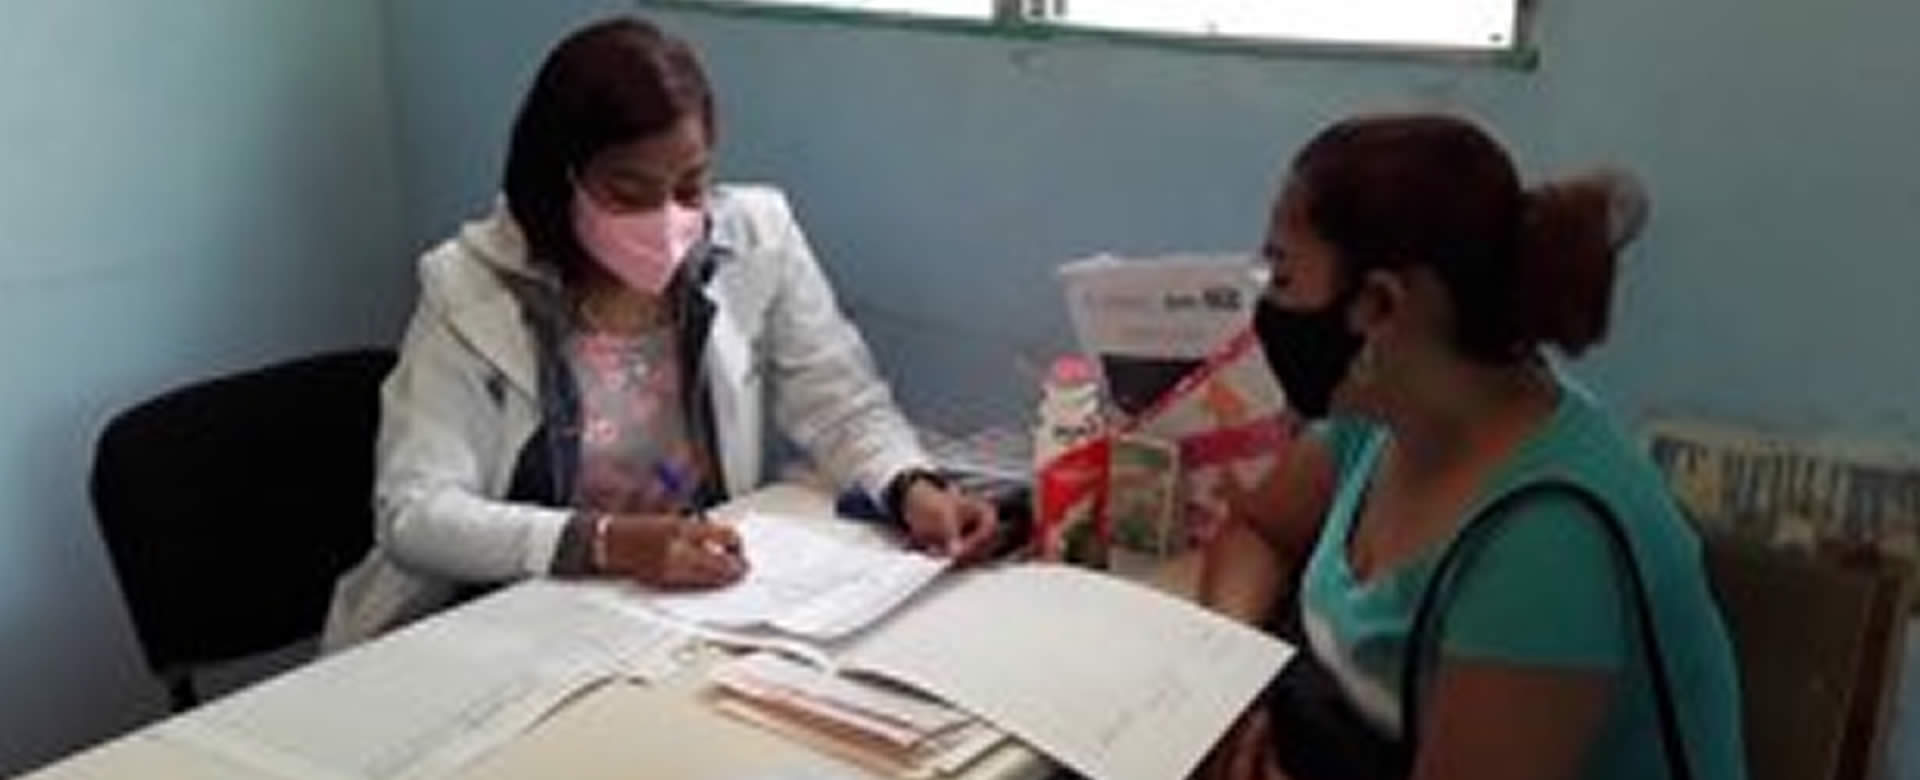 Mujeres de Jinotega acuden a cita médica en prevención del cáncer cervicouterino